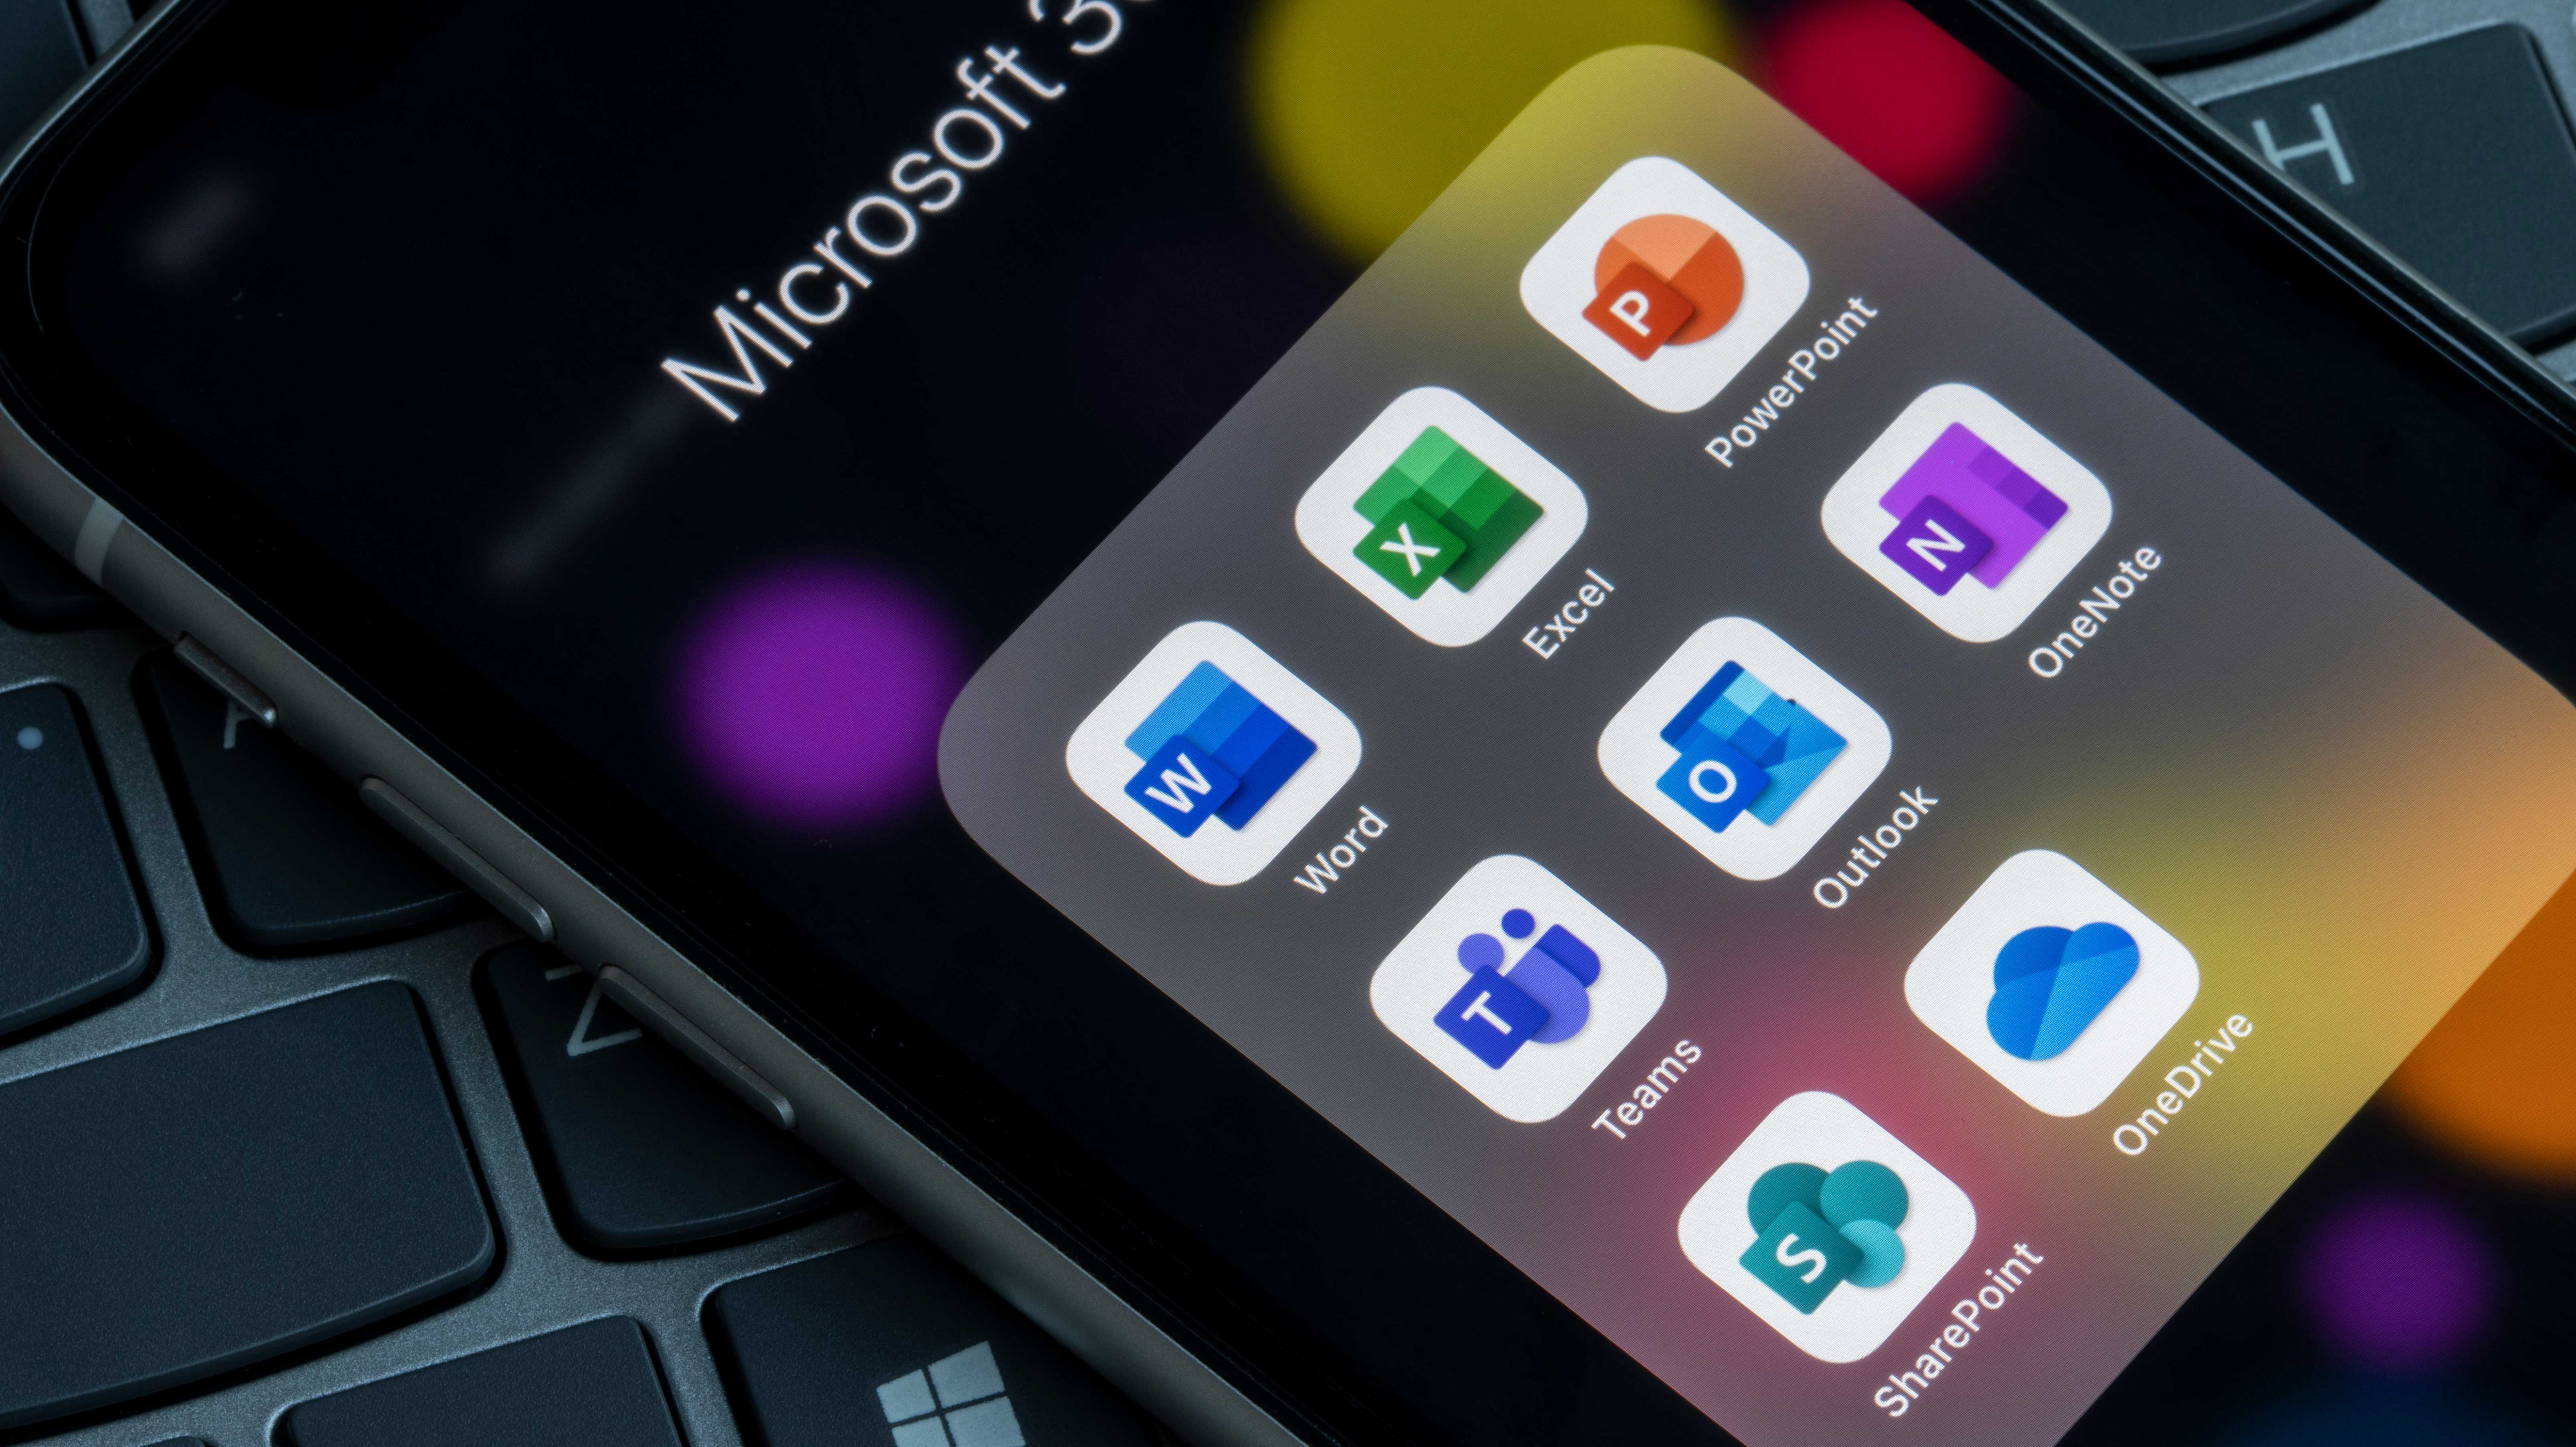 Handy zeigt "Microsoft 365" und Icons für Word, Excel, Powerpoint, Teams, Outlook, Onenote, Sharepoint und Onedrive